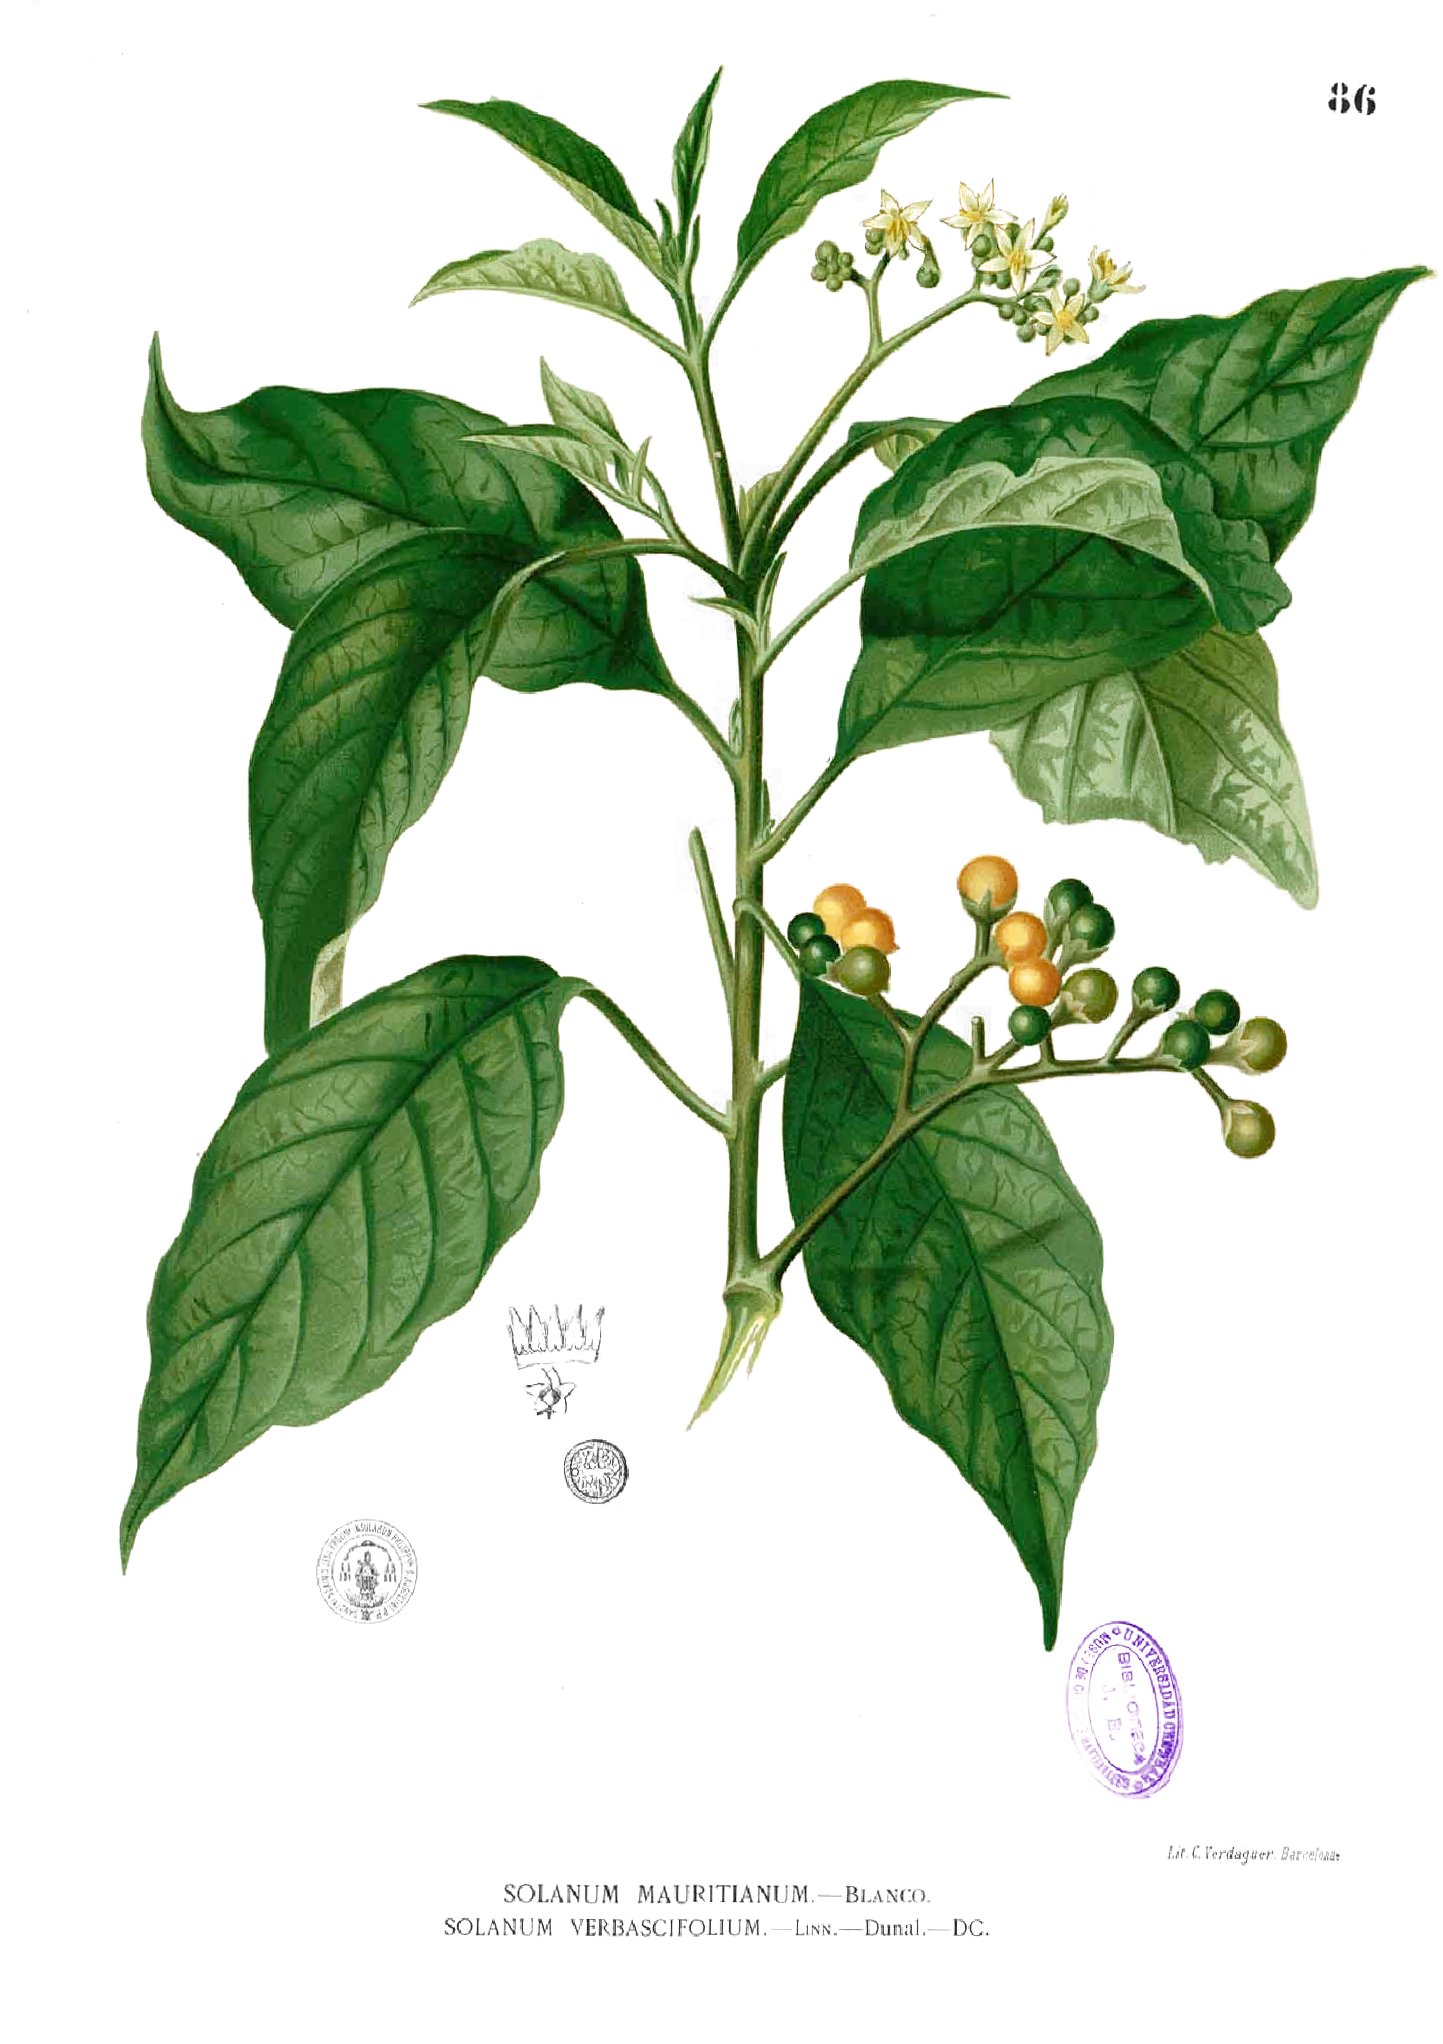 Solanum erianthum Blanco1.86